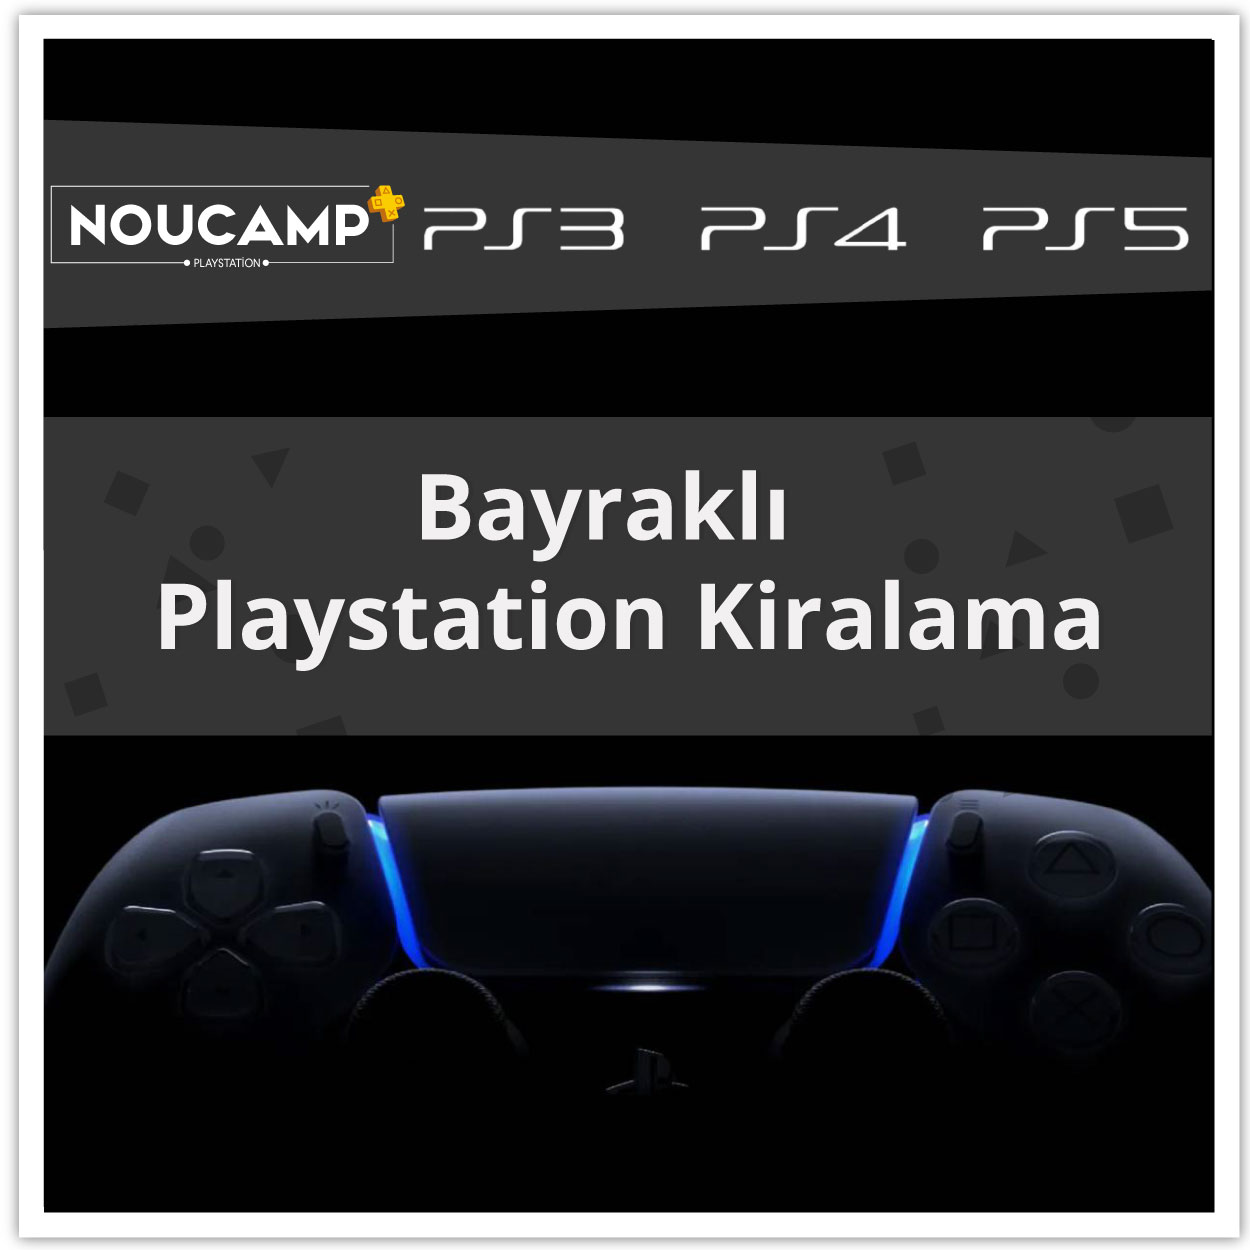 bayrakli-playstation-kiralama